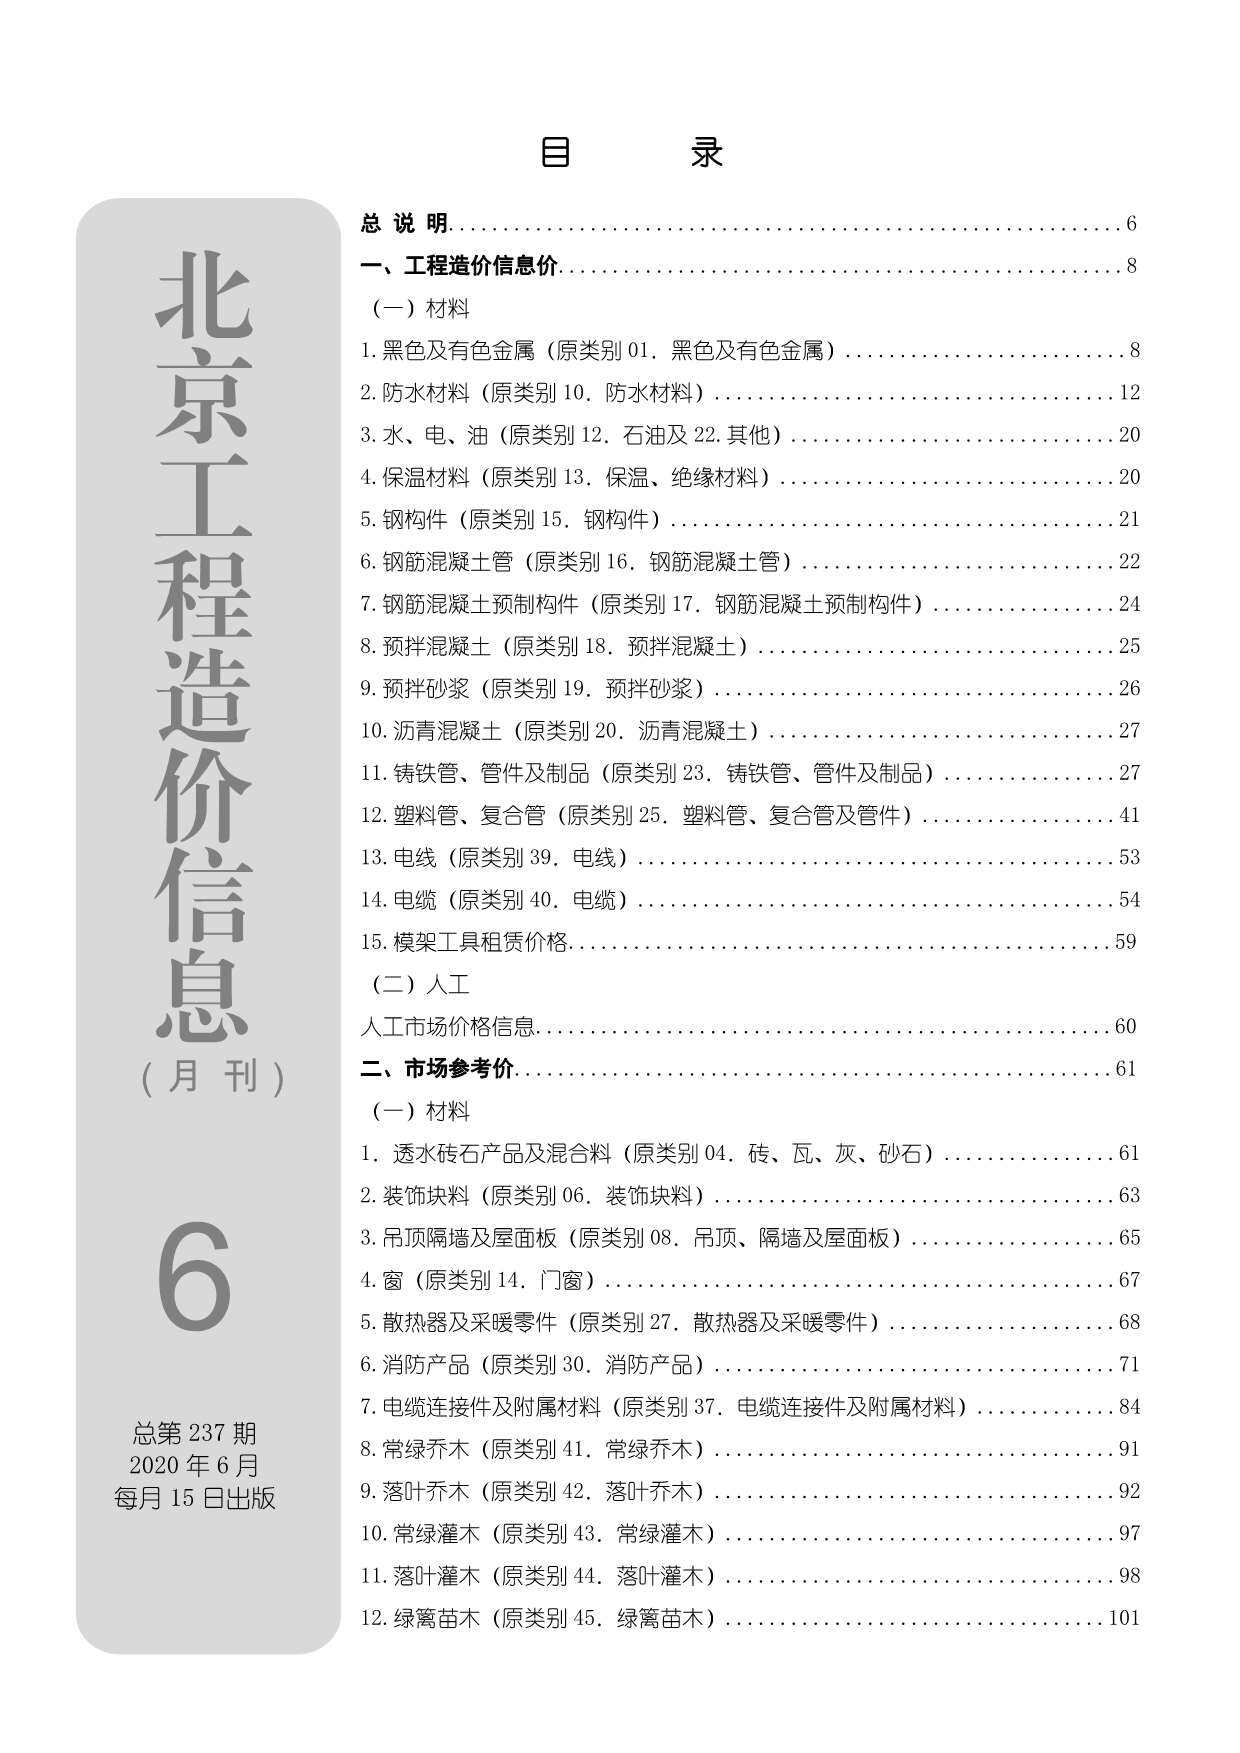 北京市2020年6月工程造价信息期刊